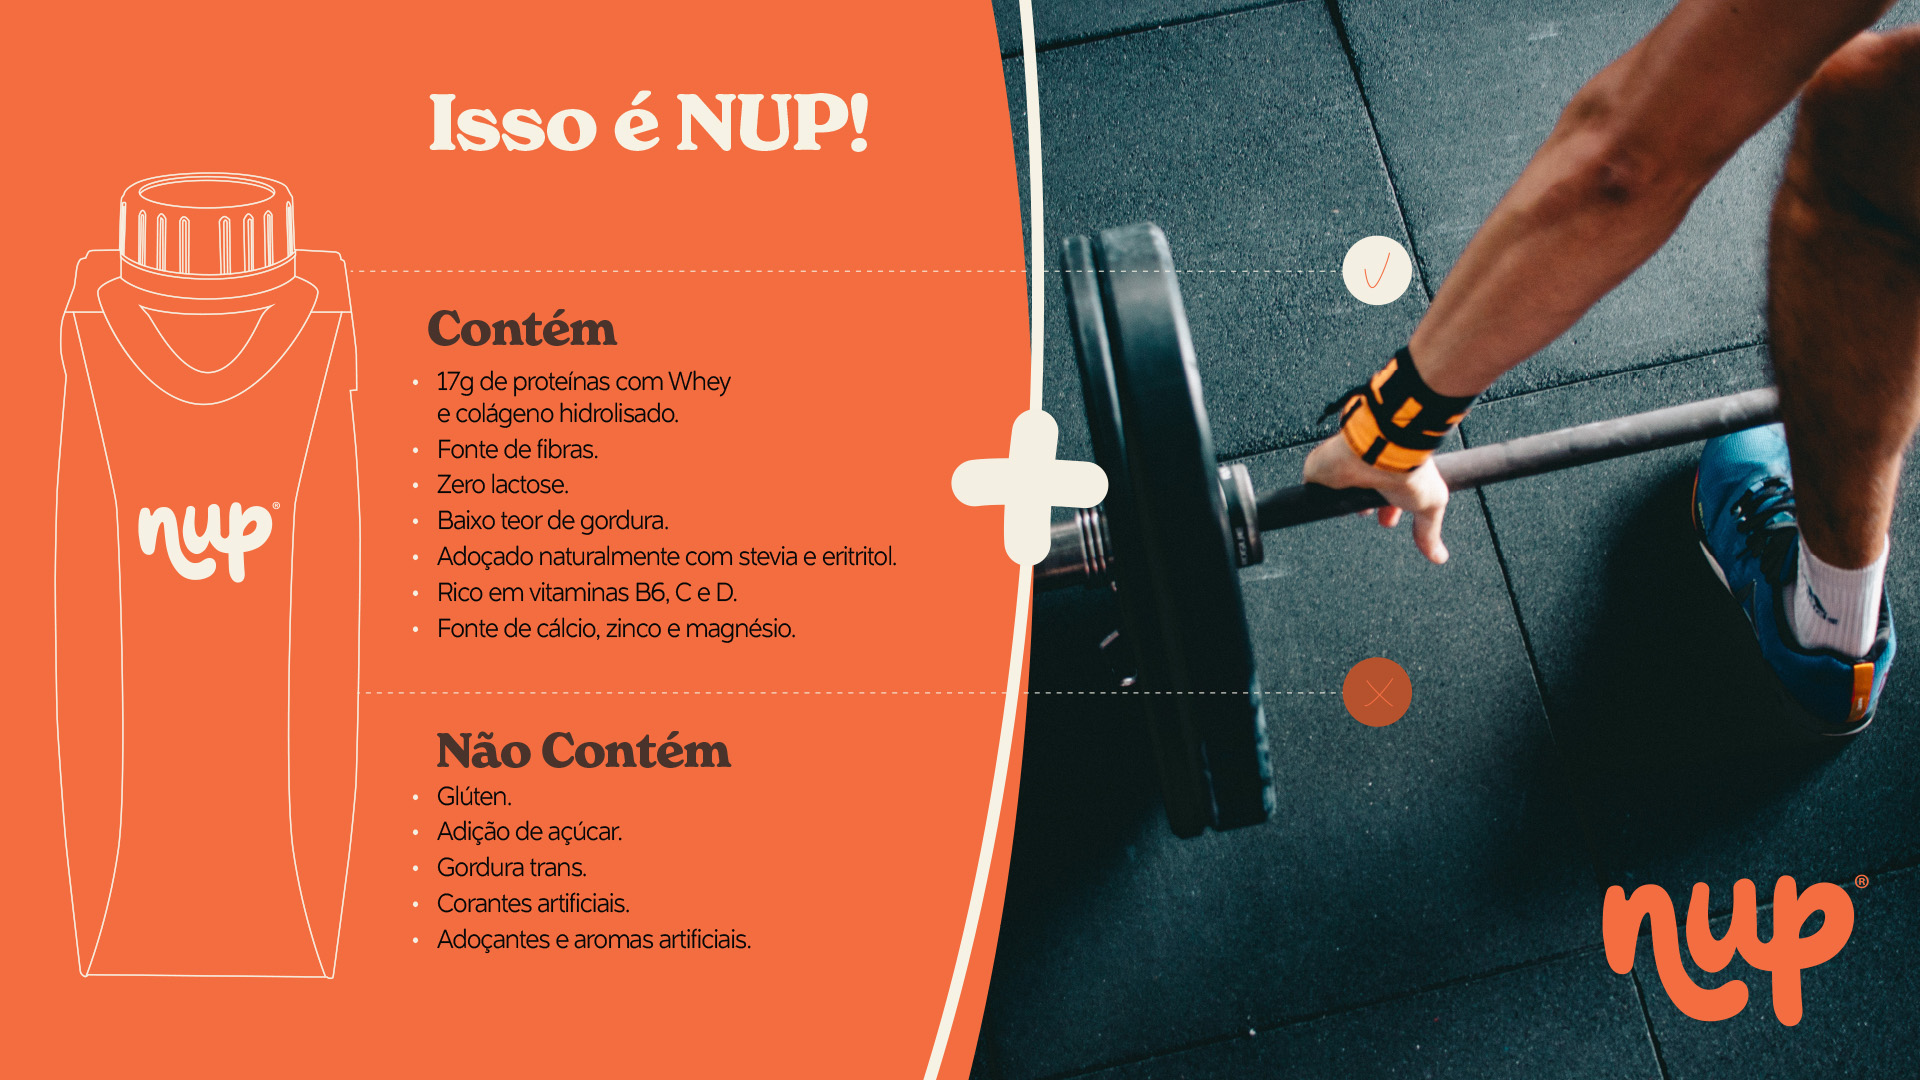 Imagem de atleta levantando peso e comunicação com principais atributos do produto NUP.